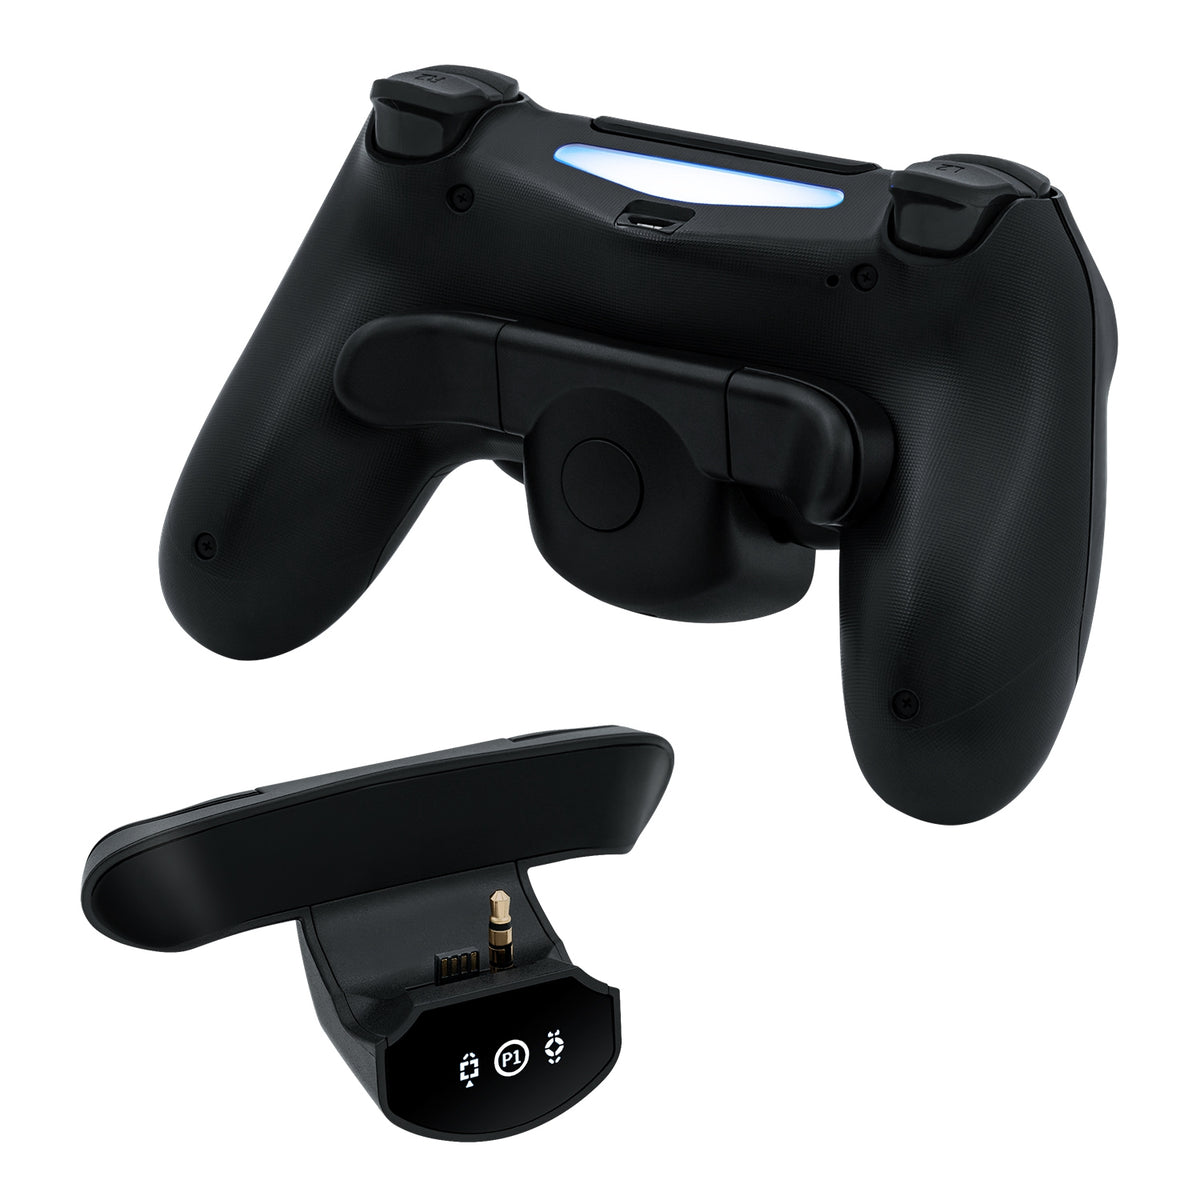 DOBE Controller Back Button Attachment Adapter for Xbox One S/X/Series –  SupremeGameGear